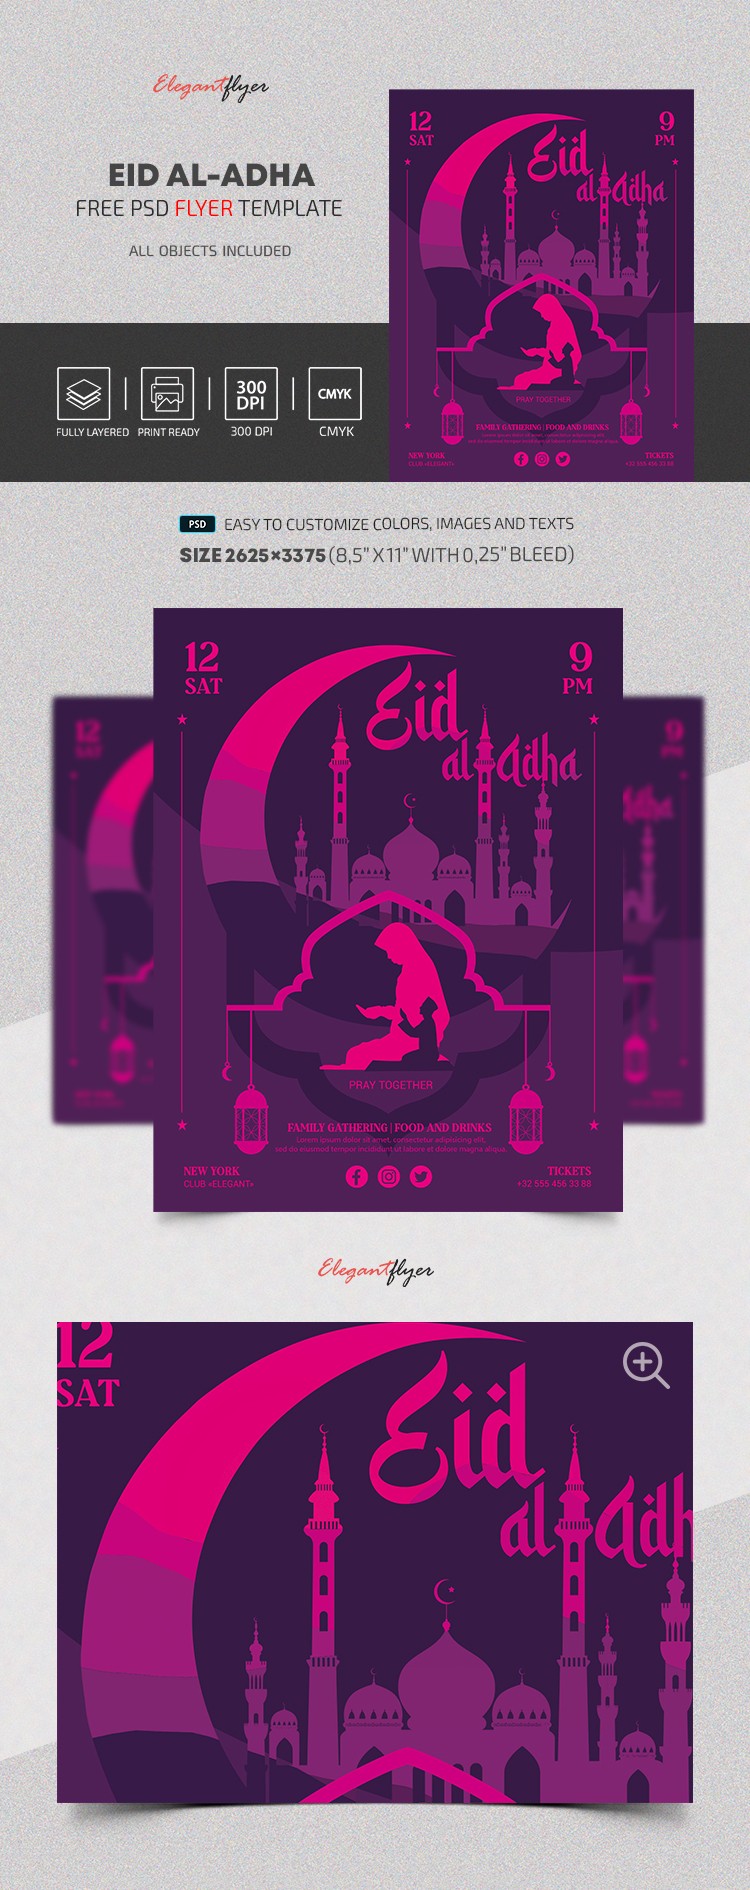 Eid Al-Adha by ElegantFlyer